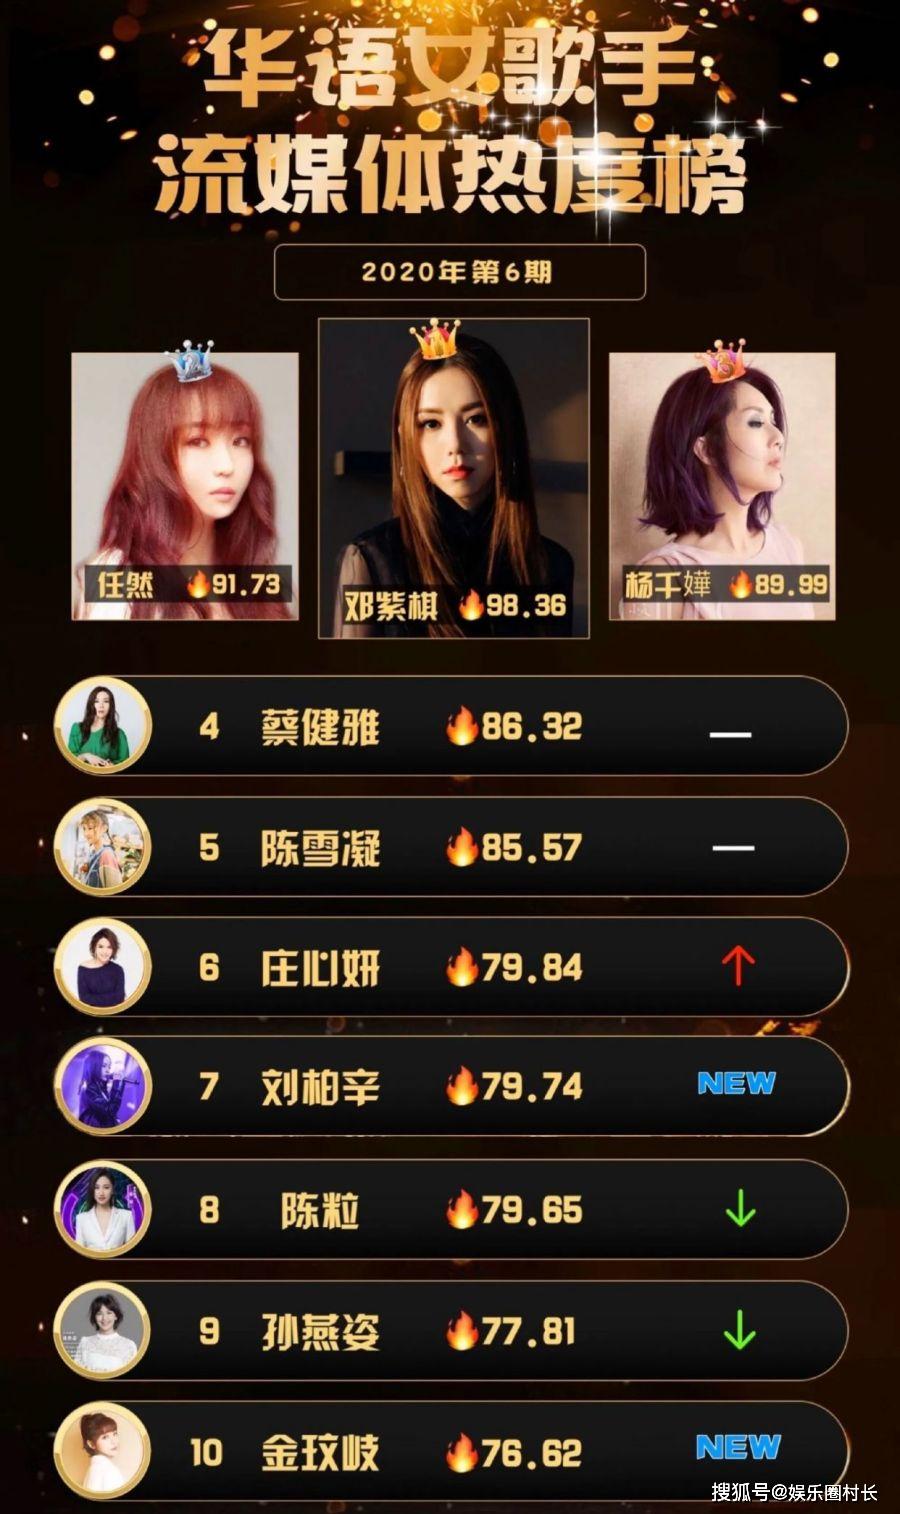 华语歌手热度排名_最新华语男歌手热度排名出炉,周杰伦第二